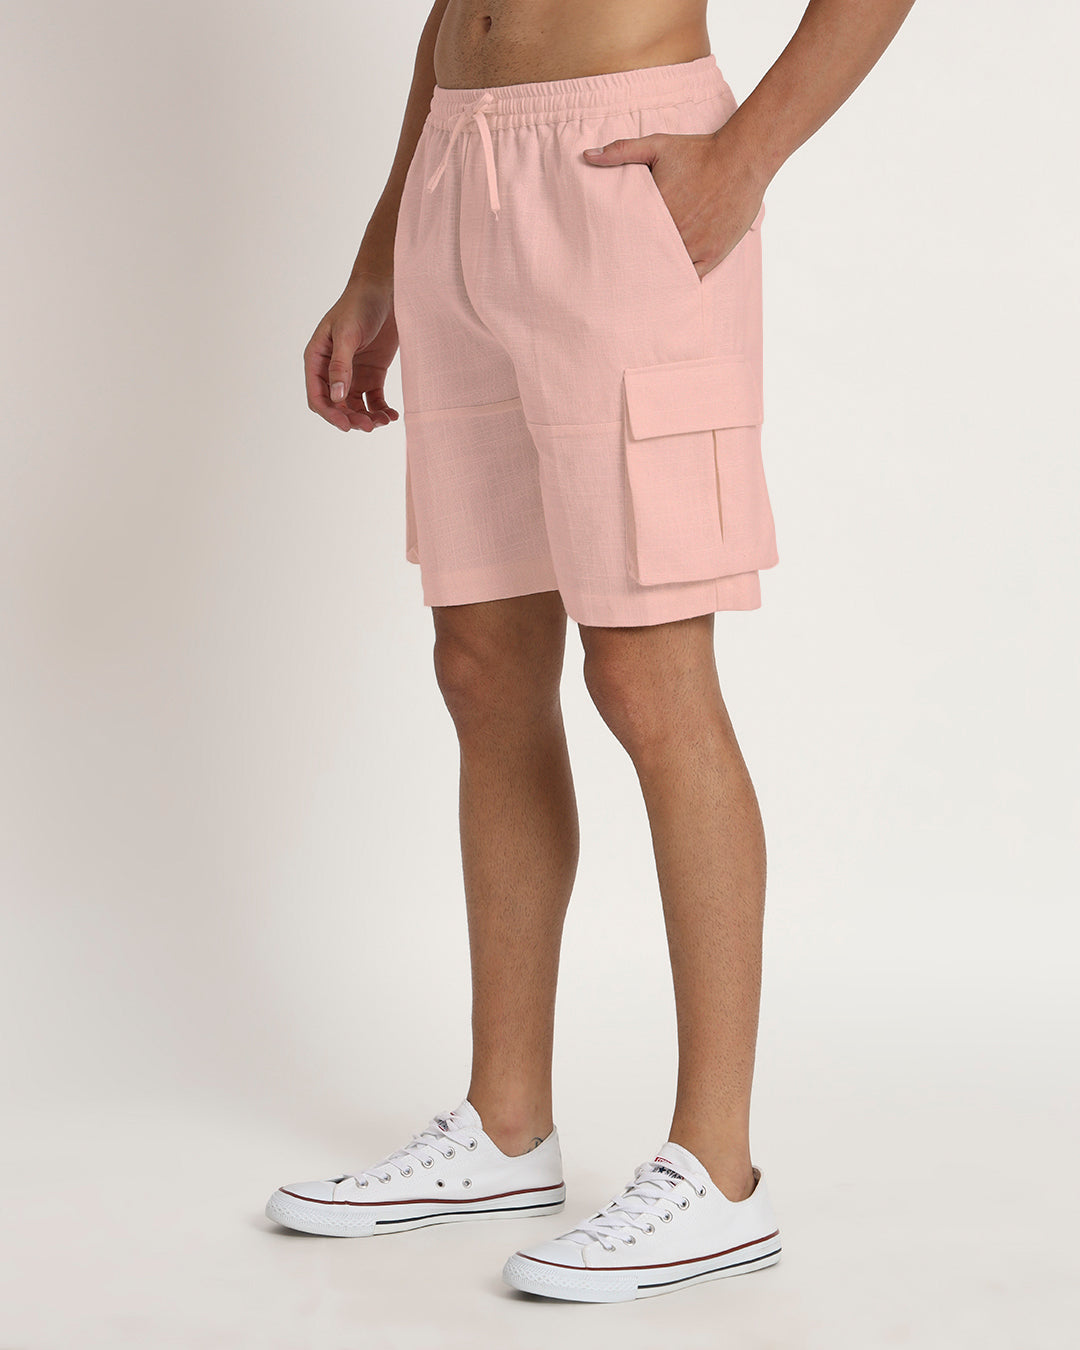 Combo : Slub Comfort Cargo Shorts Grey & Fondant Pink Men's Shorts